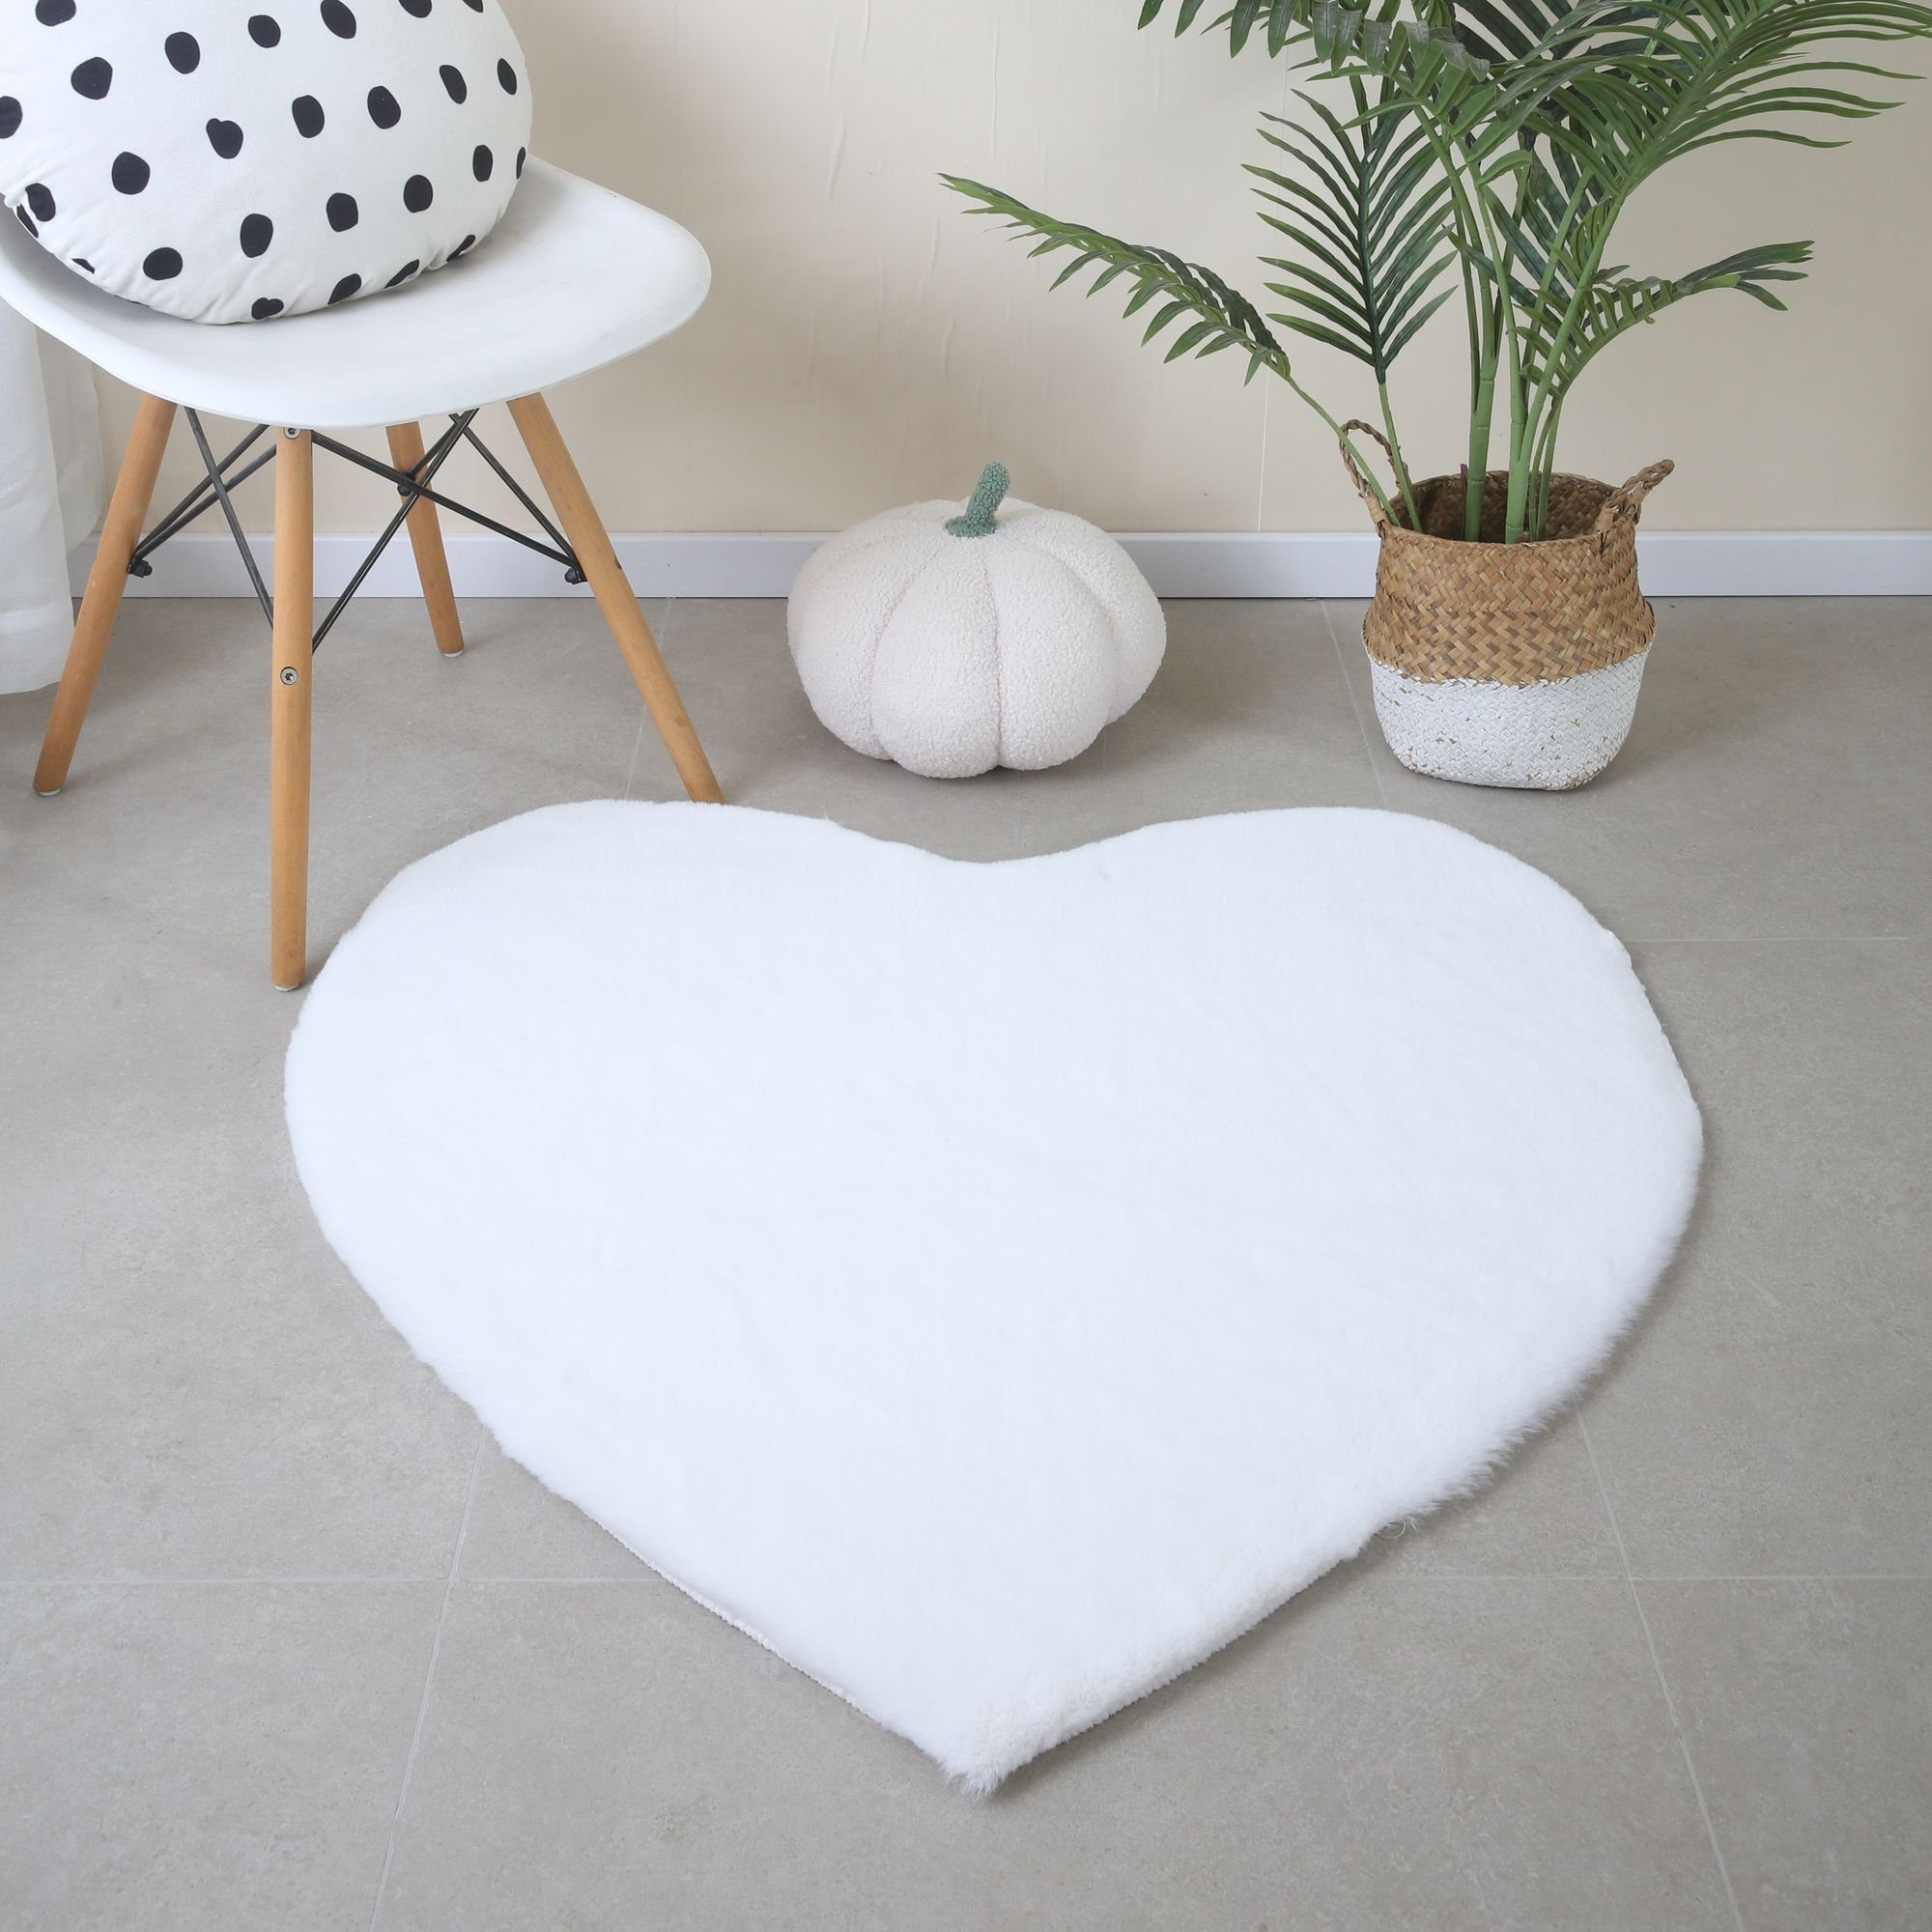 Fellteppich Herz Form, Carpetsale24, Rund, Höhe: 25 mm, Teppich Plüsch Einfarbig Herzform Kunstfell Kinderzimmer Weiß